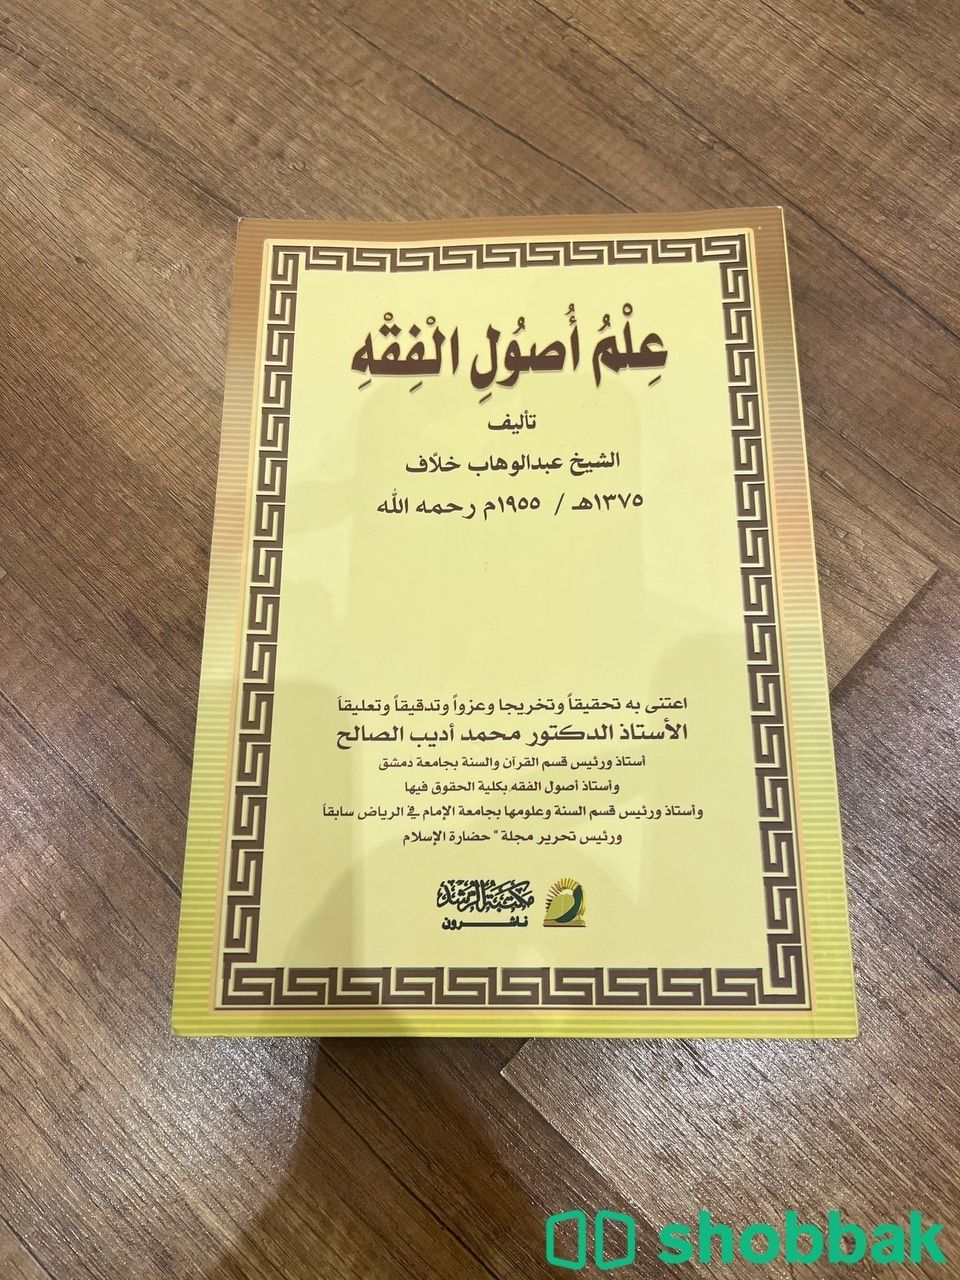  كتاب علم اصول الفقه  شباك السعودية